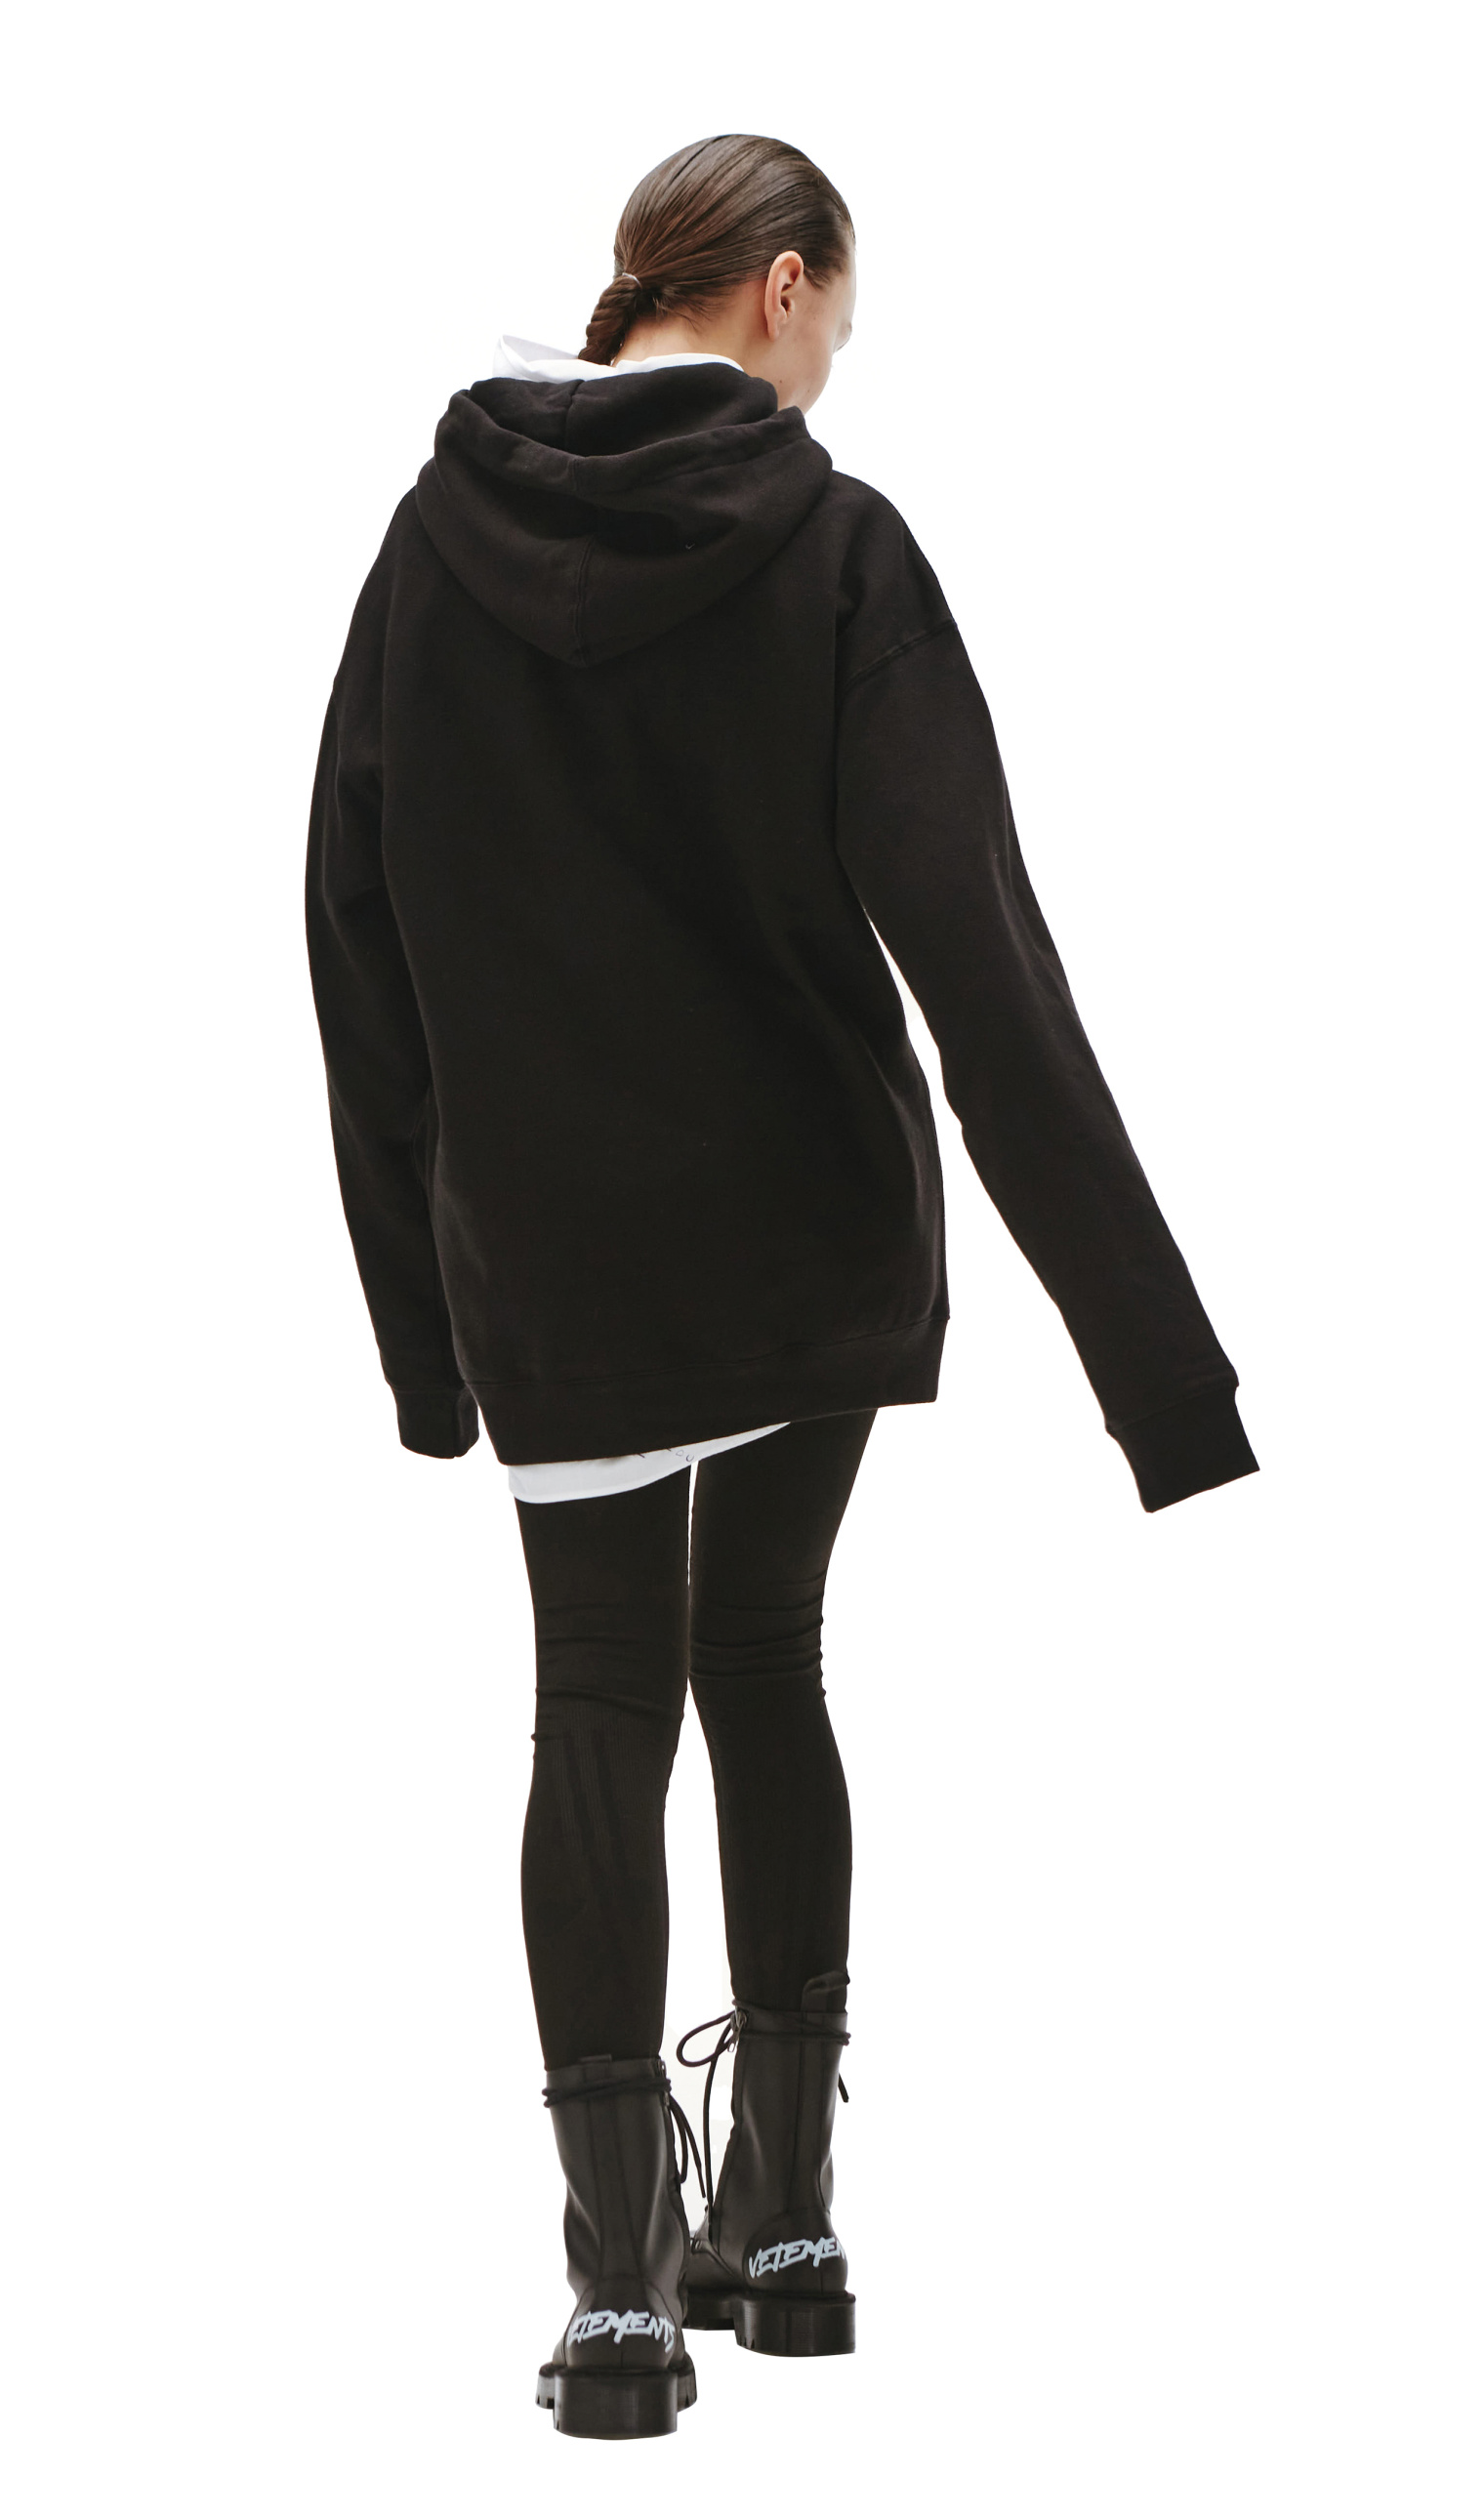 KidSuper Printed Cotton Black Hoodie